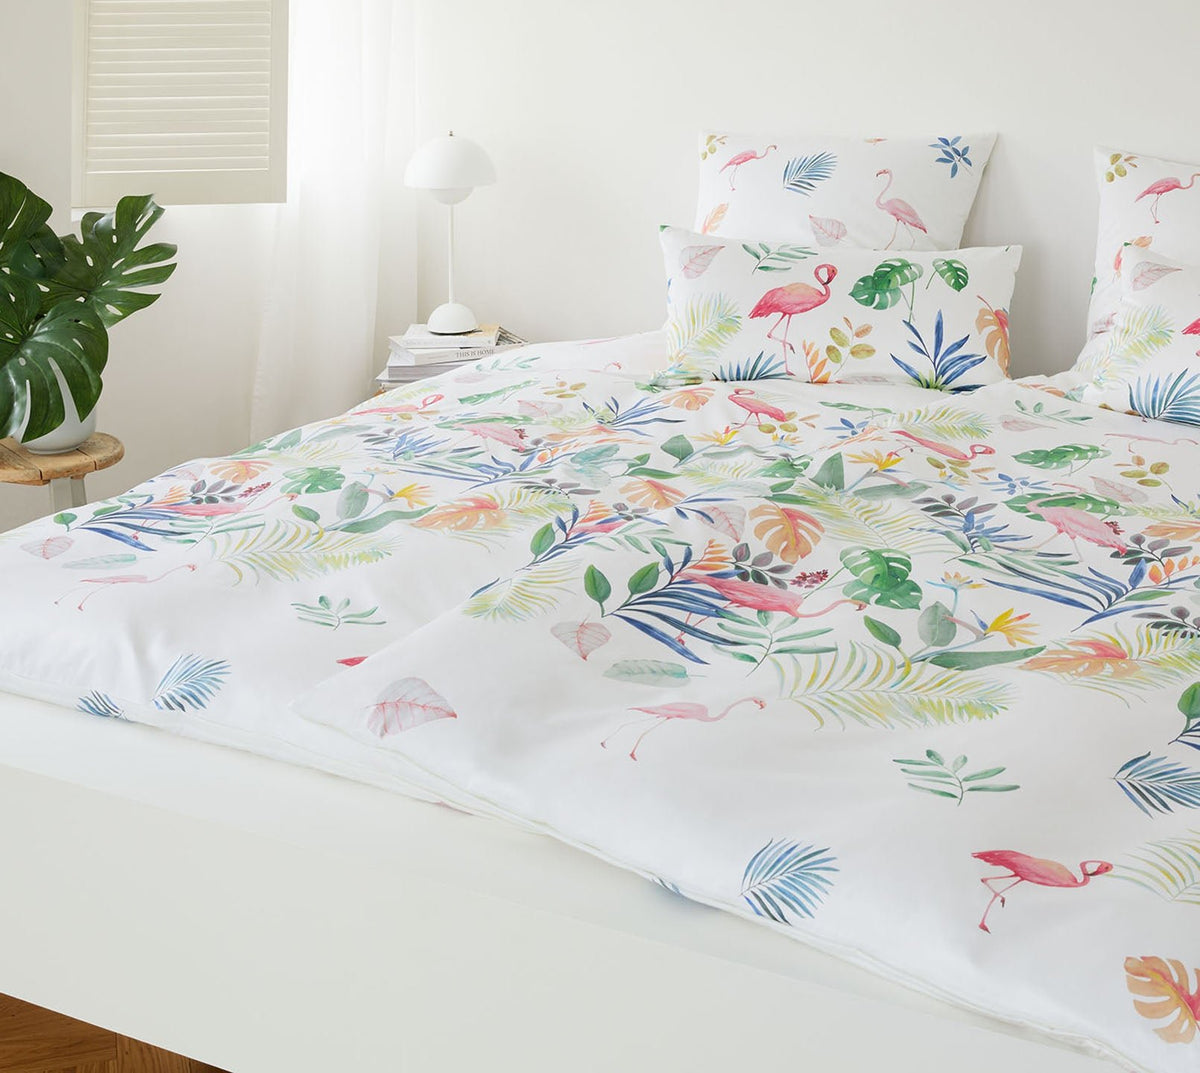 Seiden Satin Bettwaesche Flamingo in Weiß Flamingo Schlafzimmer #farbe_Weiß #farbe_Weiß